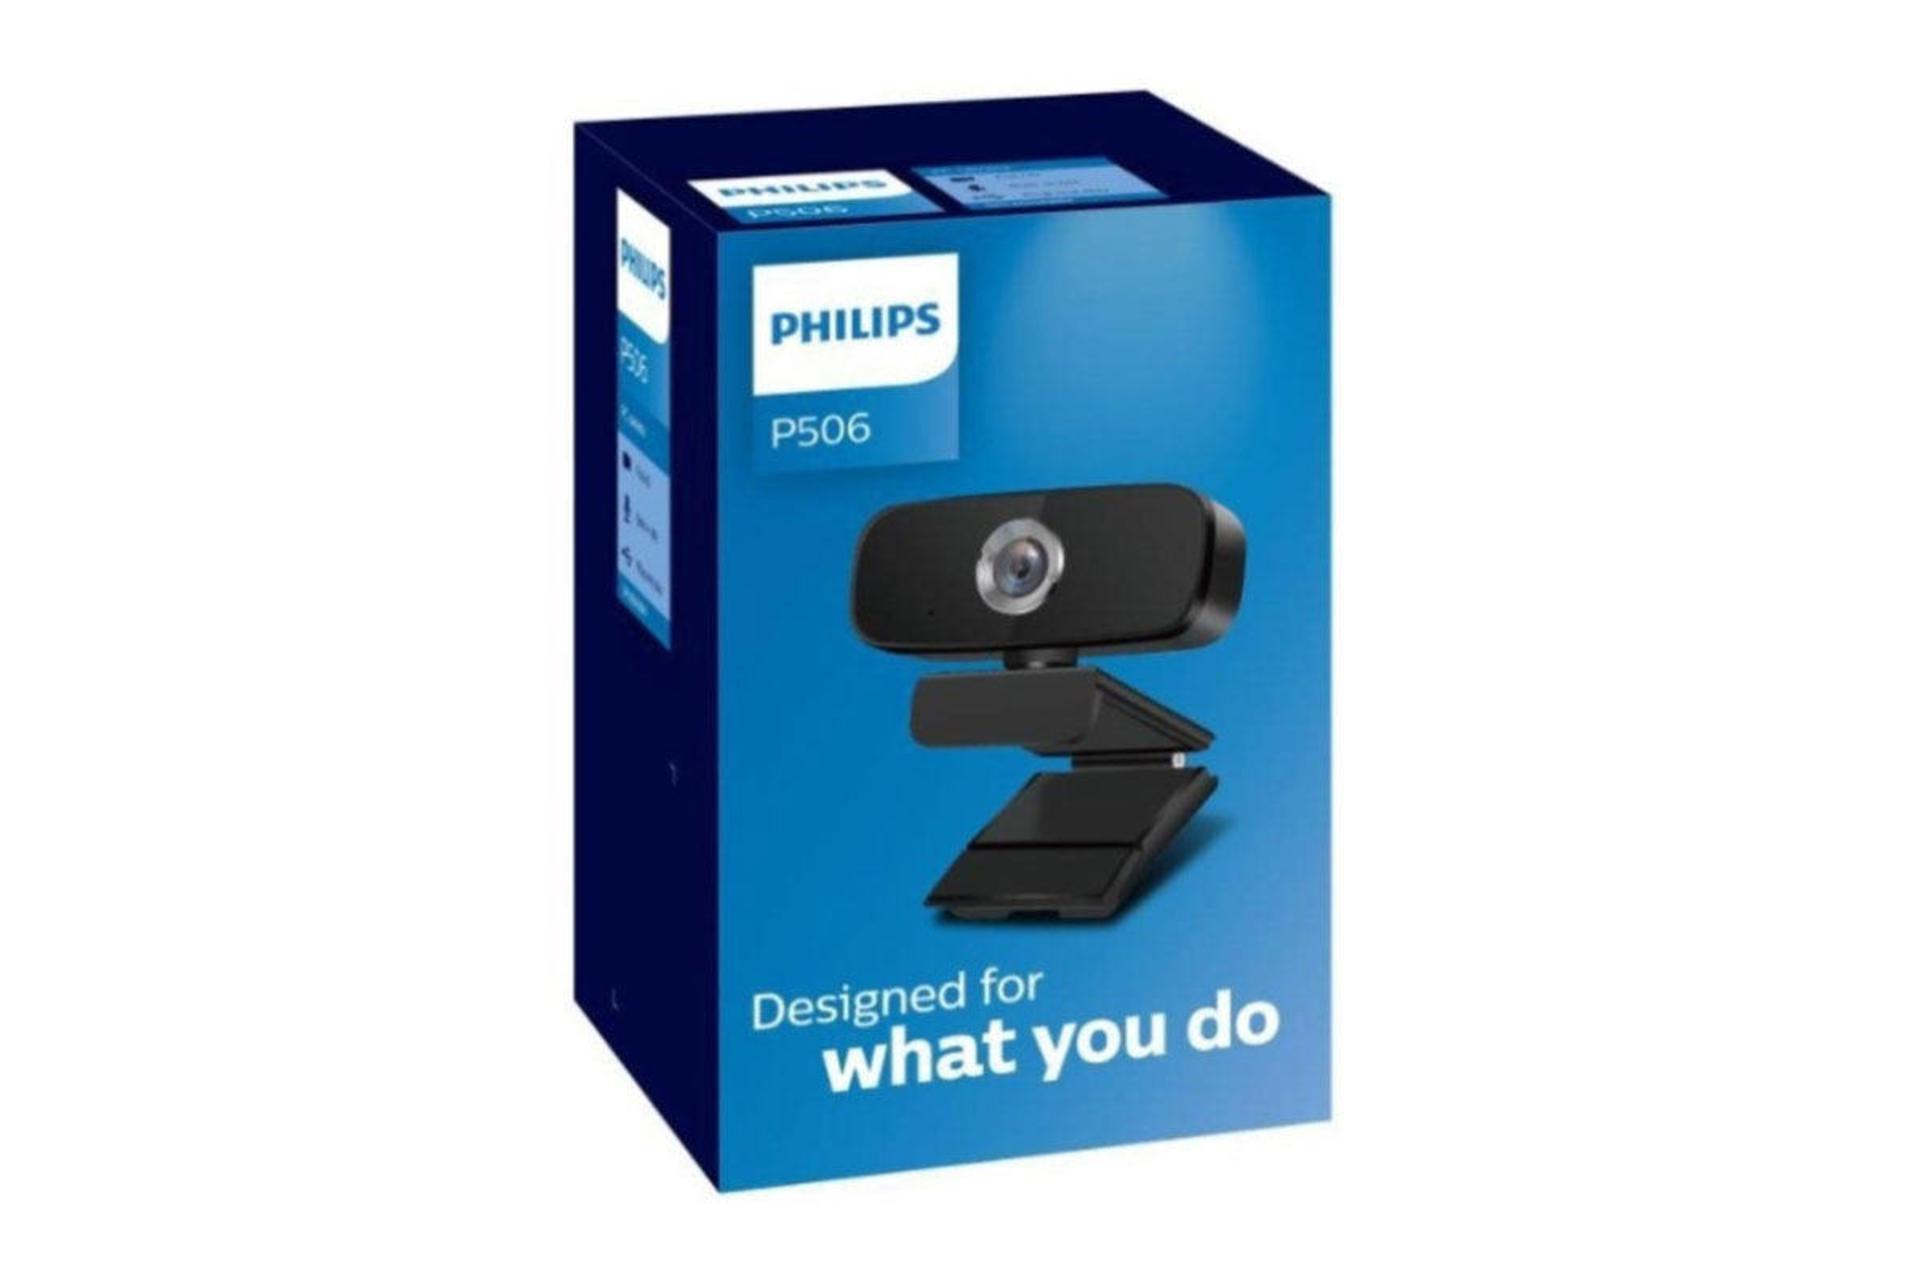 بسته بندی وب کم فیلیپس Philips P506